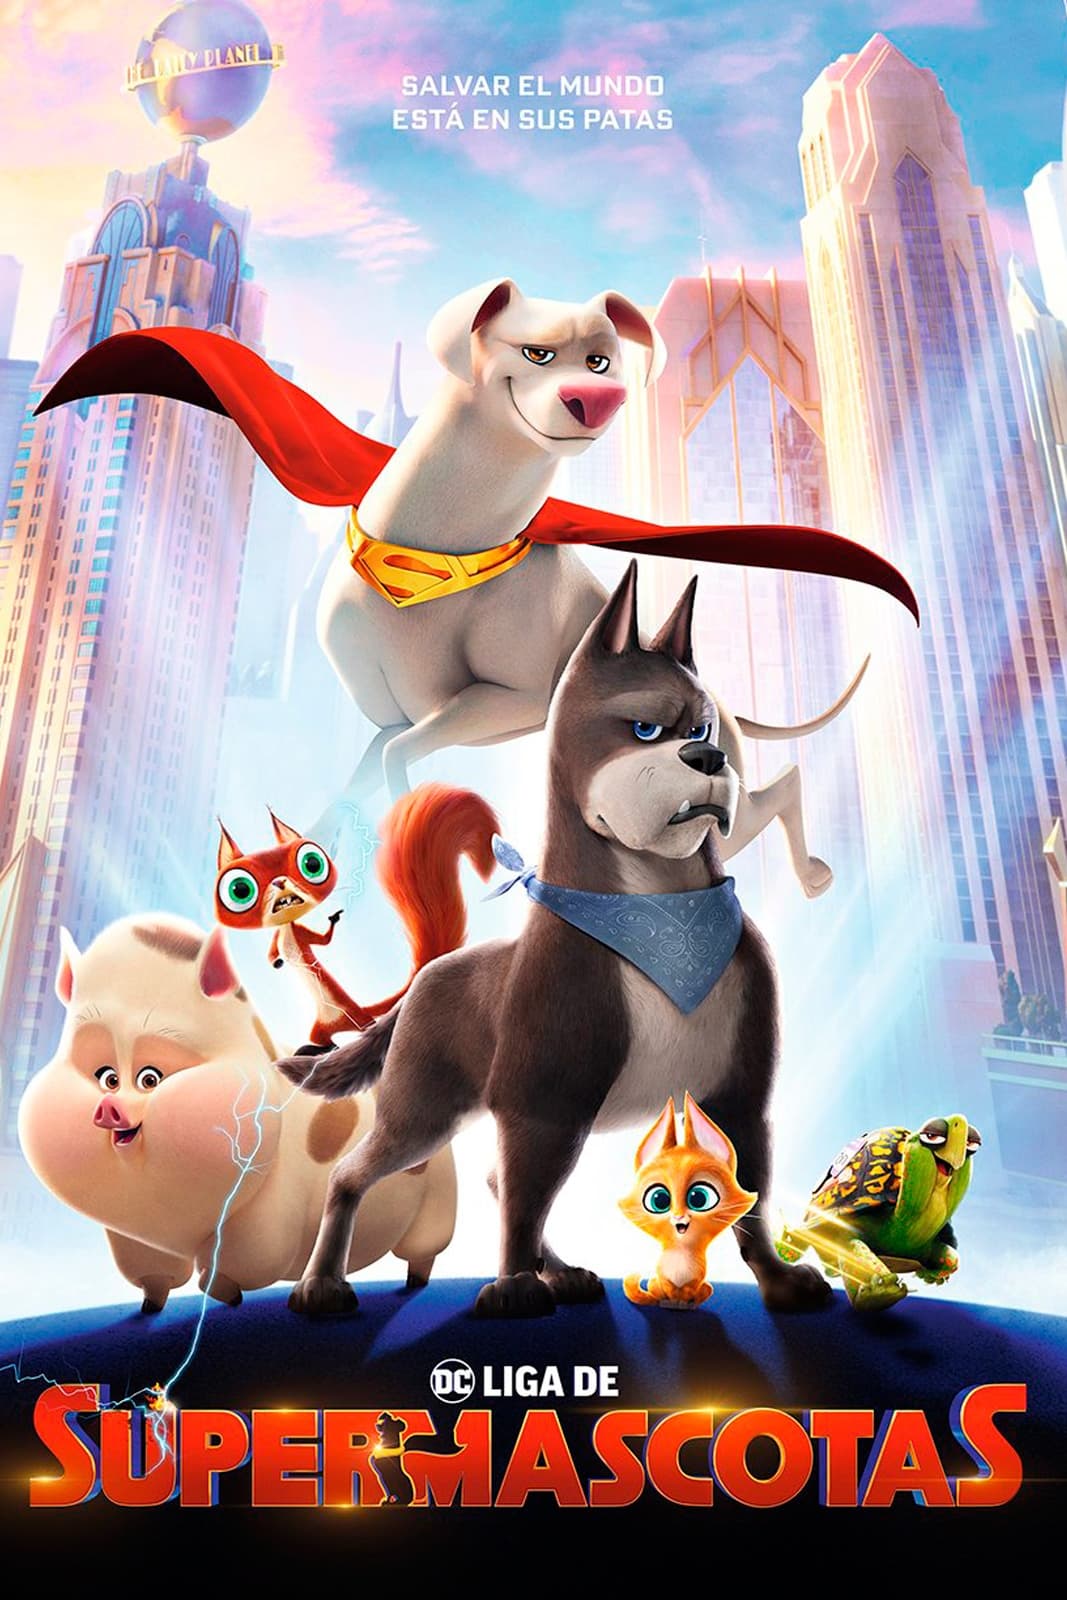 DC League of Super-Pets poster